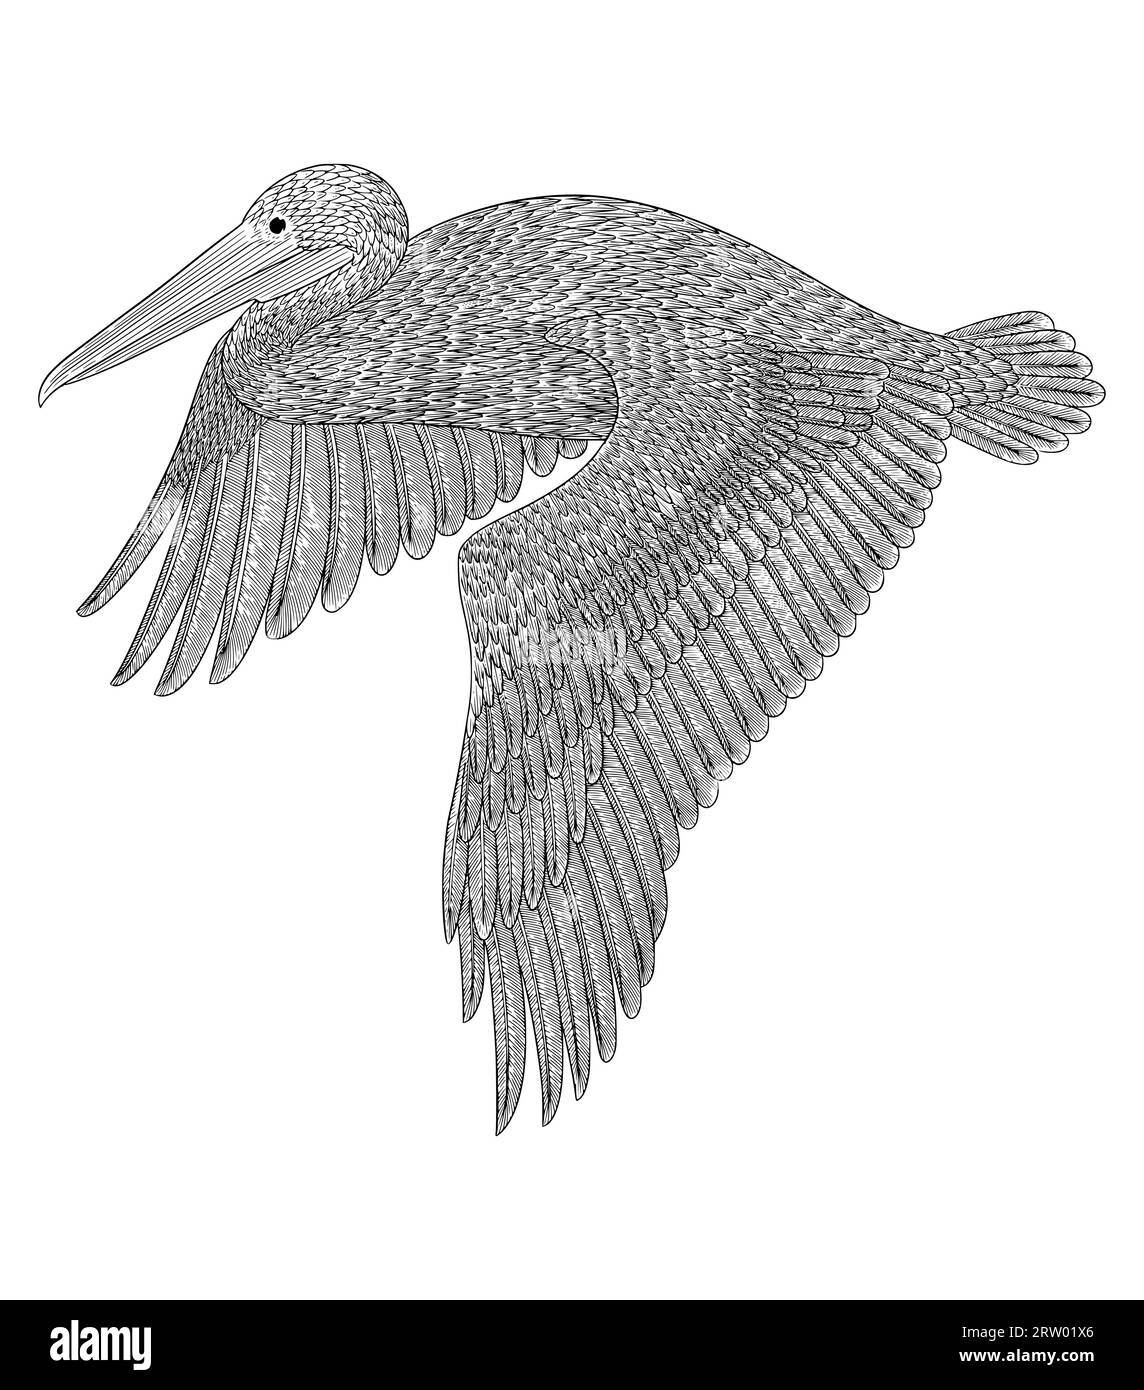 Oiseau Pelican volant sur le ciel, gravure vintage dessin style vecteur illlustation Illustration de Vecteur